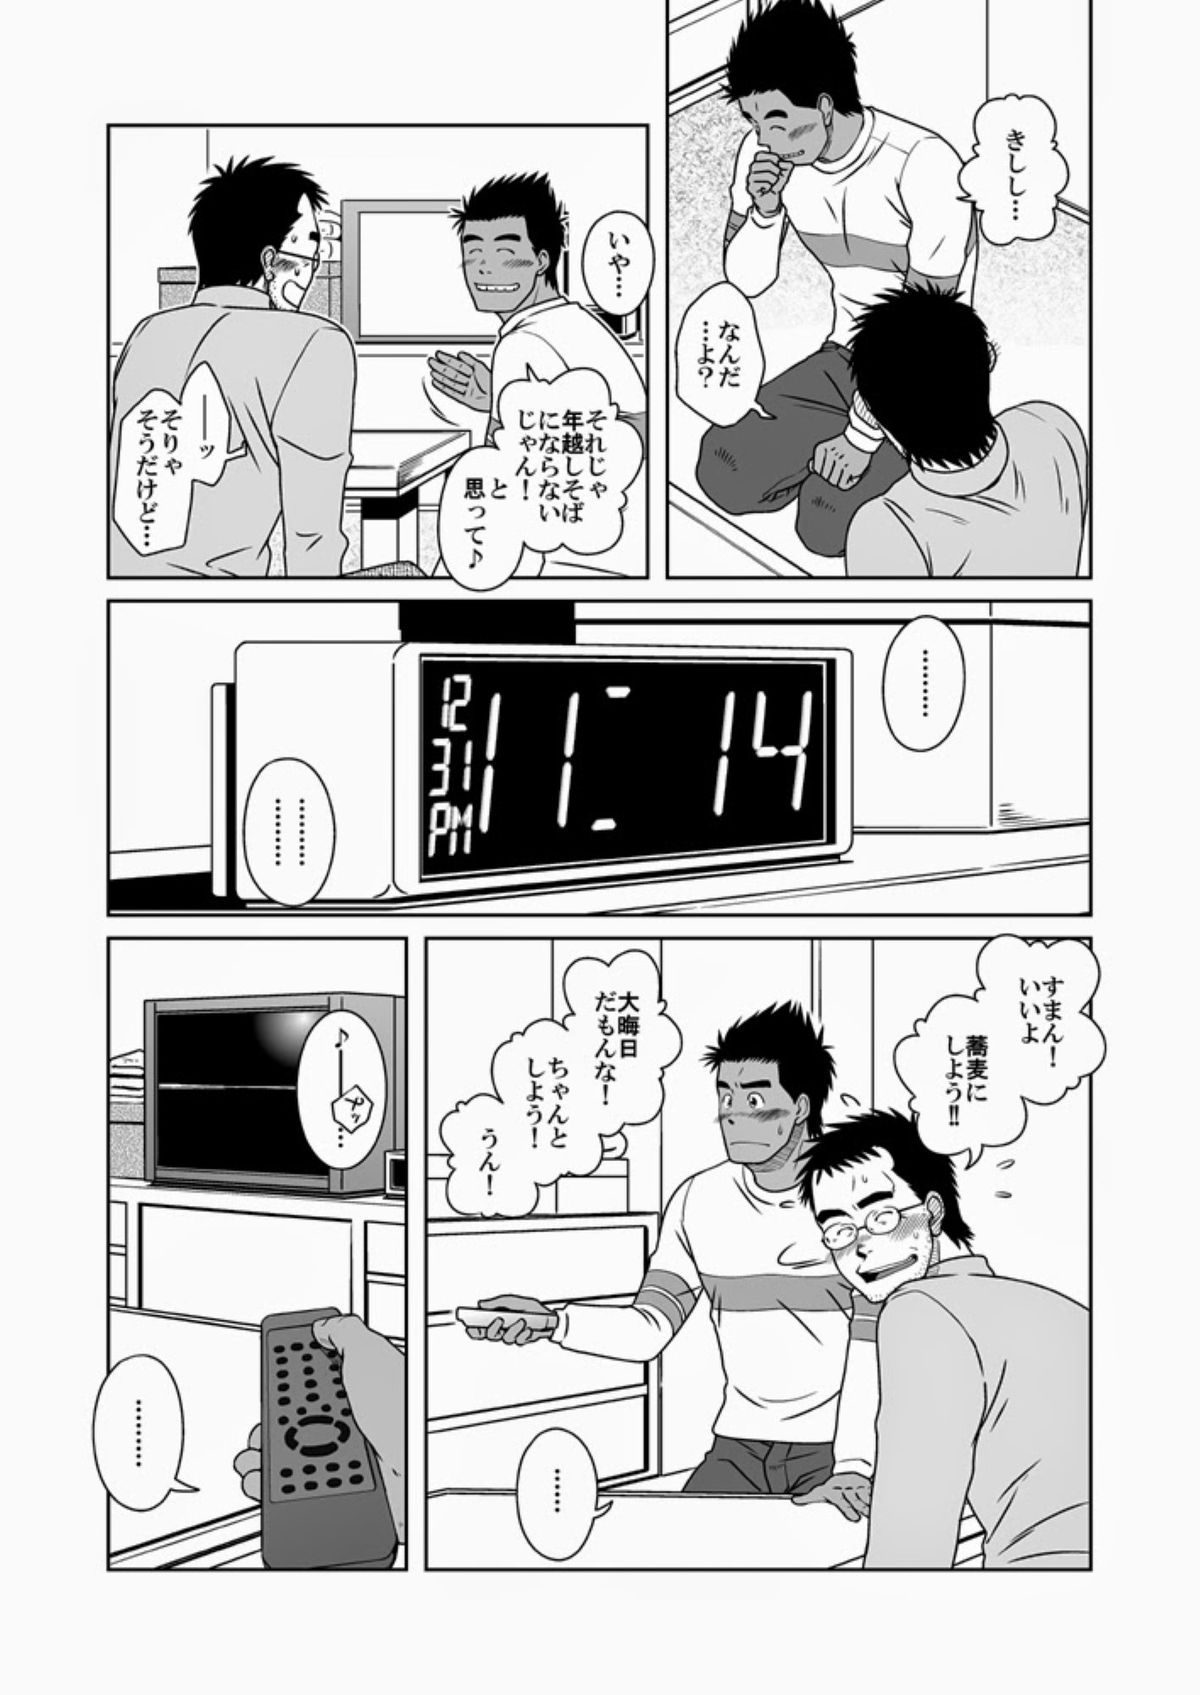 初恋書店1 |初恋商店